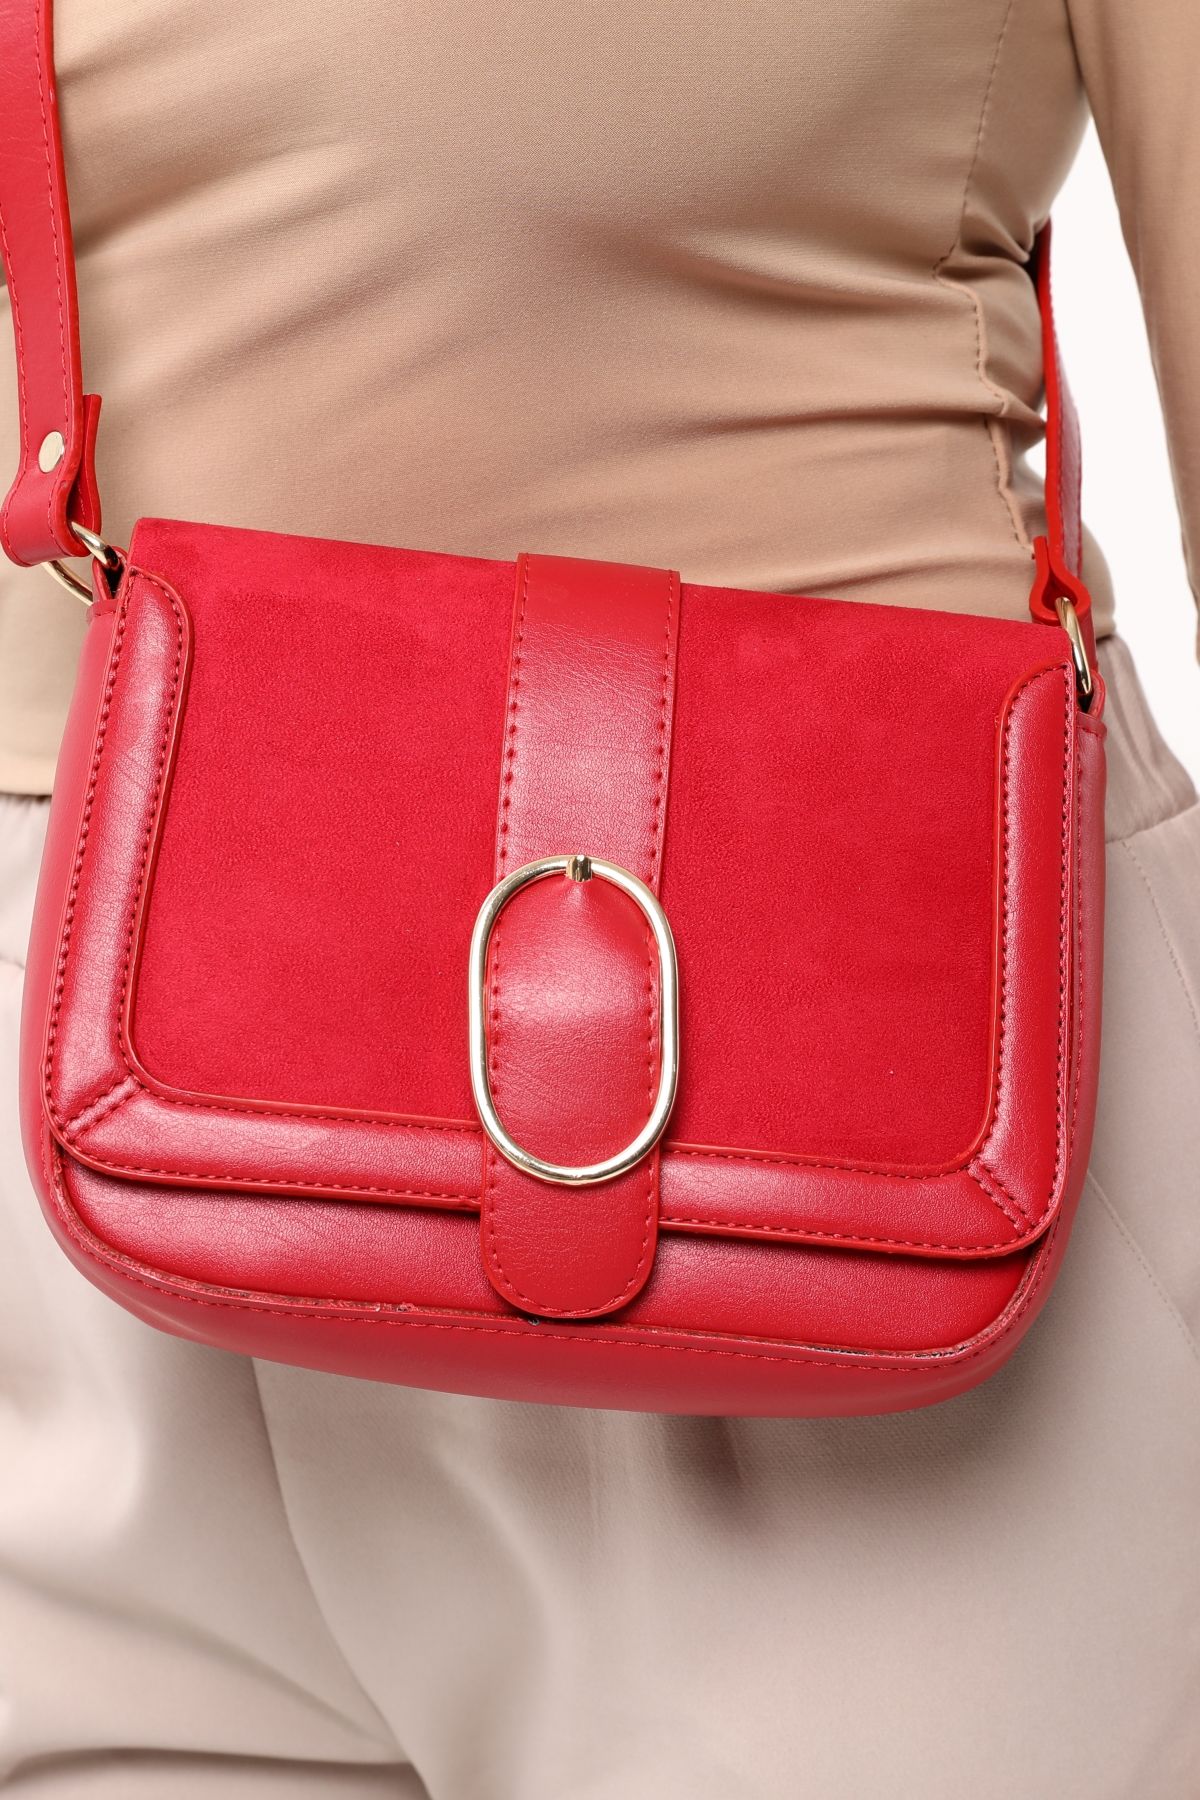 Toka Aksesuarlı Kapaklı Baget Kırmızı Kadın Omuz ve Çapraz Çanta 327